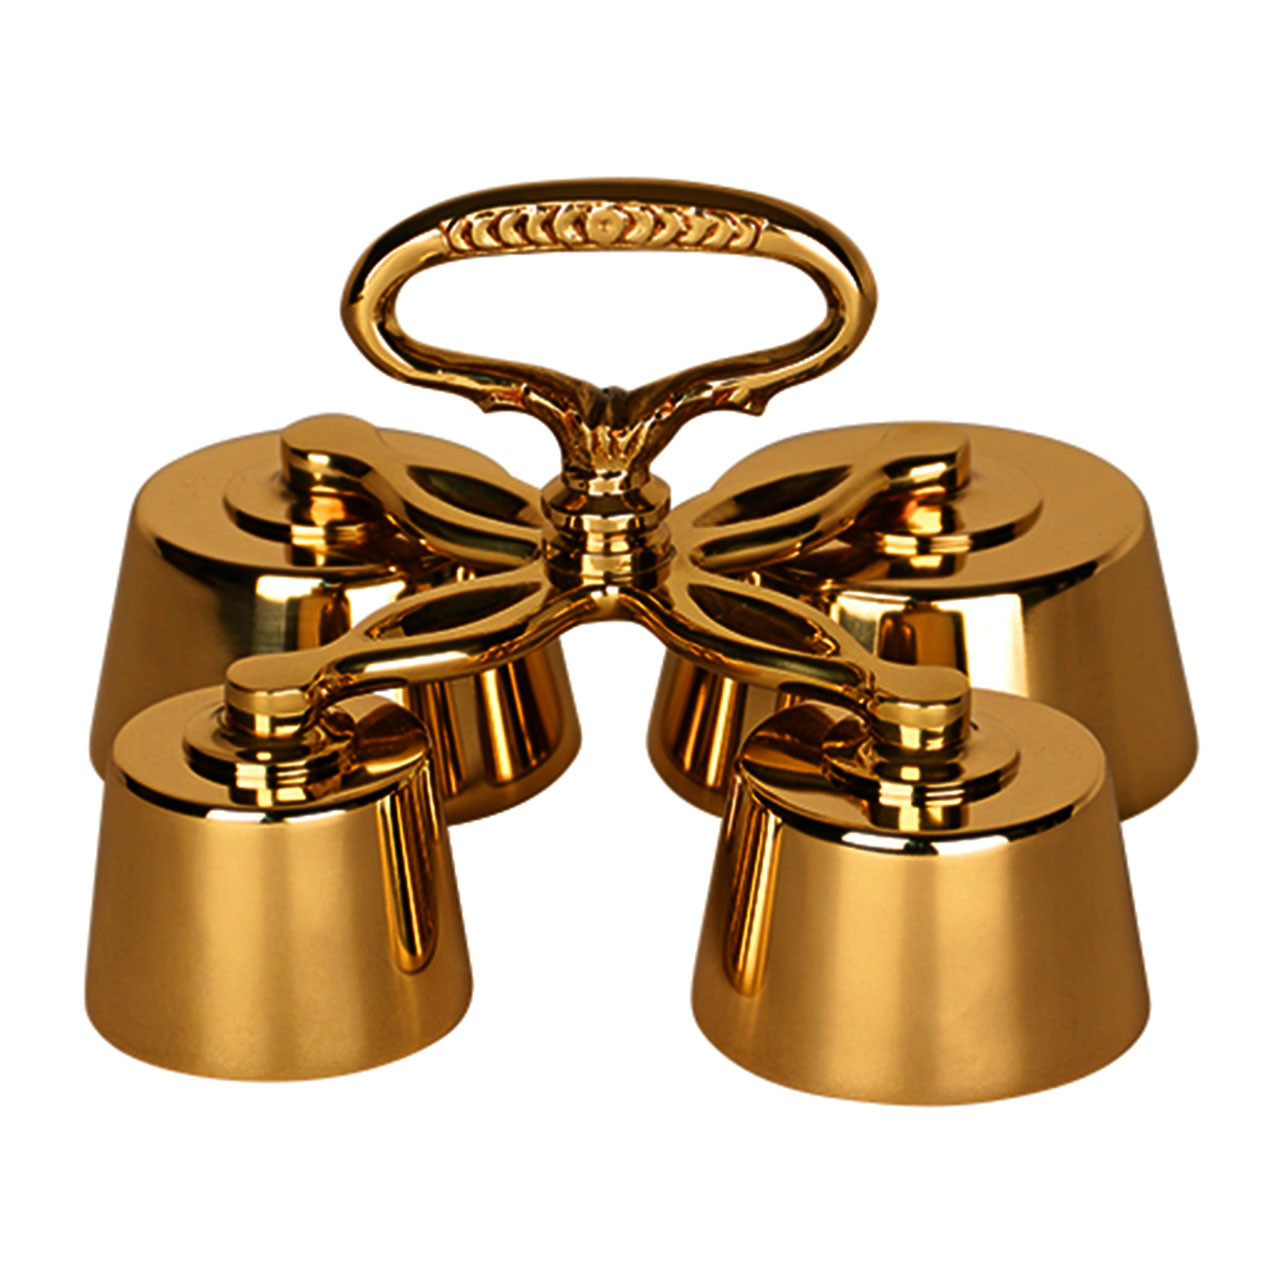 K427 Altar Bells from Koleys